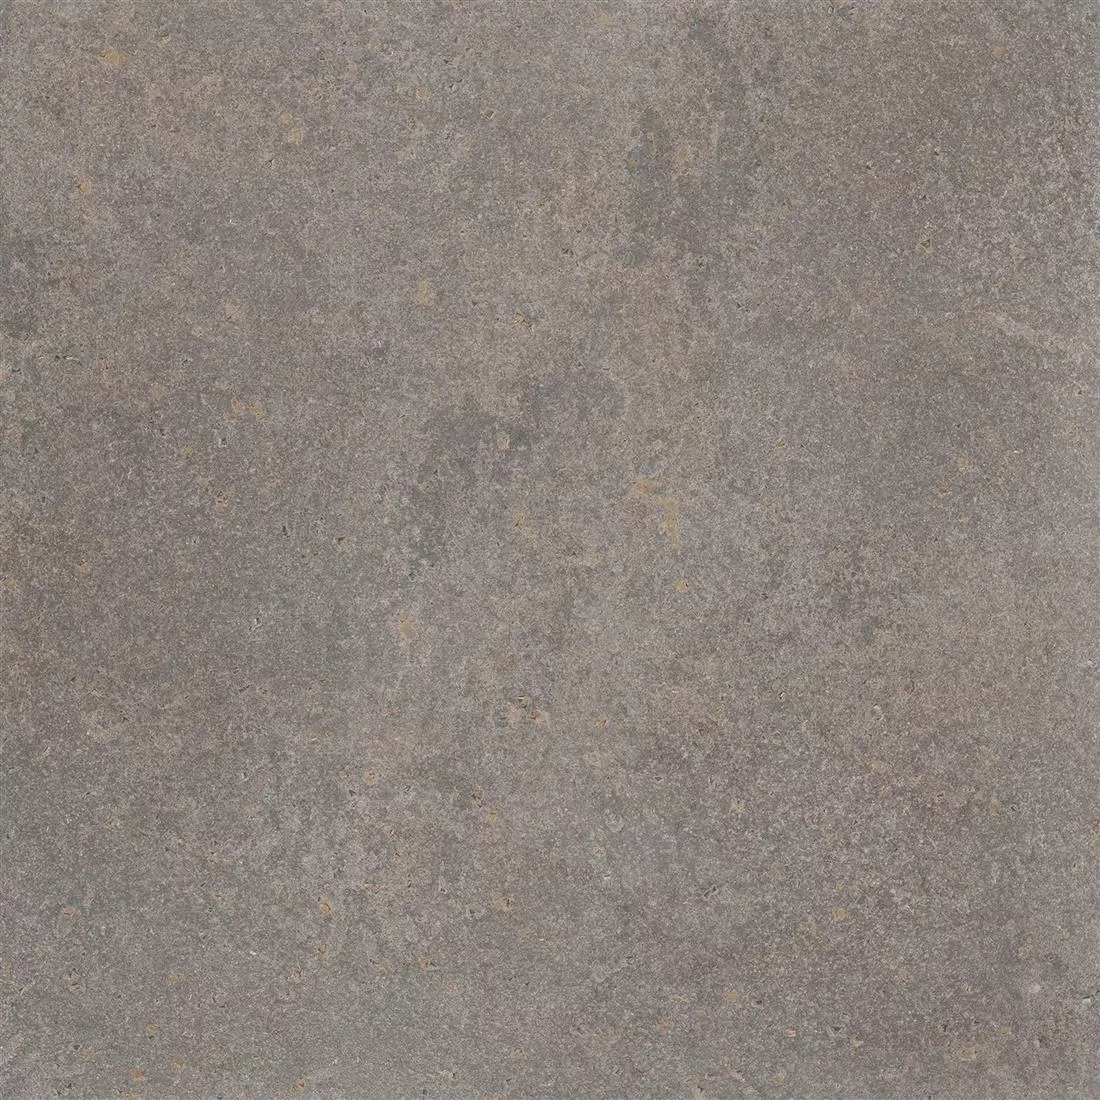 Πρότυπο Πλακάκια Δαπέδου Πέτρινη Όψη Horizon Kαφέ 60x60cm